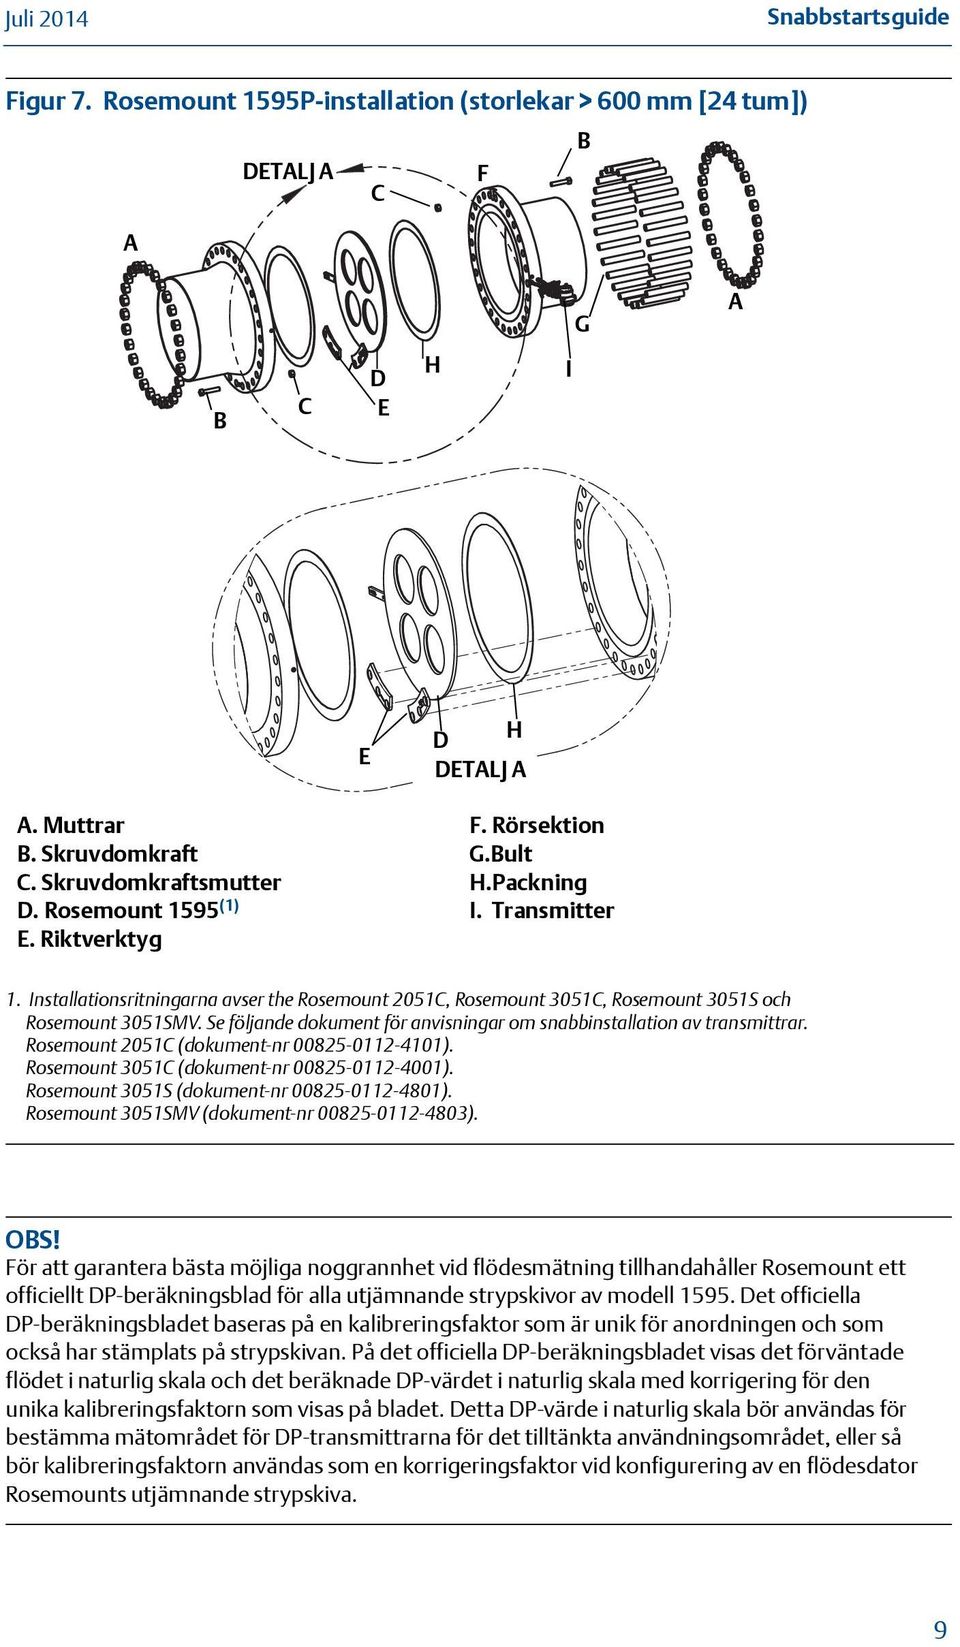 Se följande dokument för anvisningar om snabbinstallation av transmittrar. Rosemount 2051C (dokument-nr 00825-0112-4101). Rosemount 3051C (dokument-nr 00825-0112-4001).